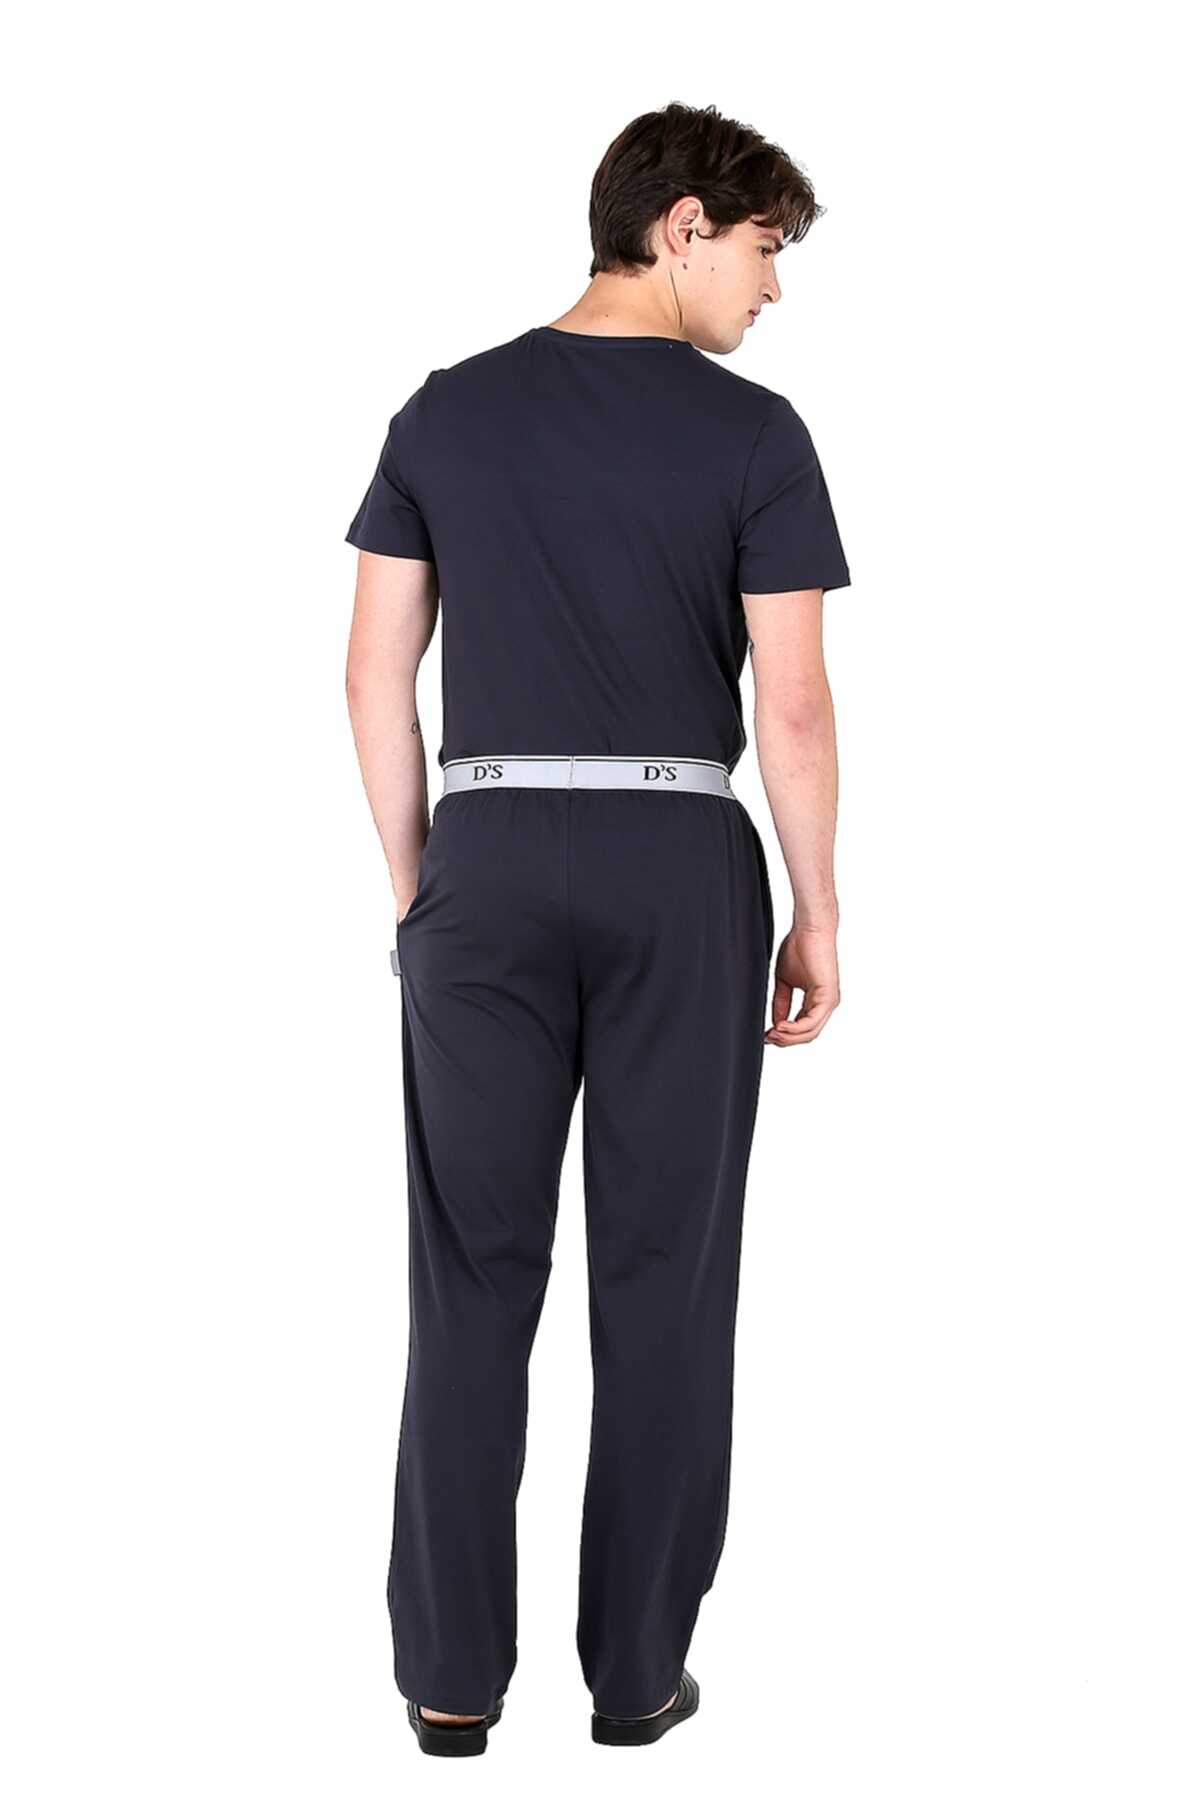 شلوار راحتی جیب دار سایز بزرگ مردانه خاکستری تیره برند D'S Damat